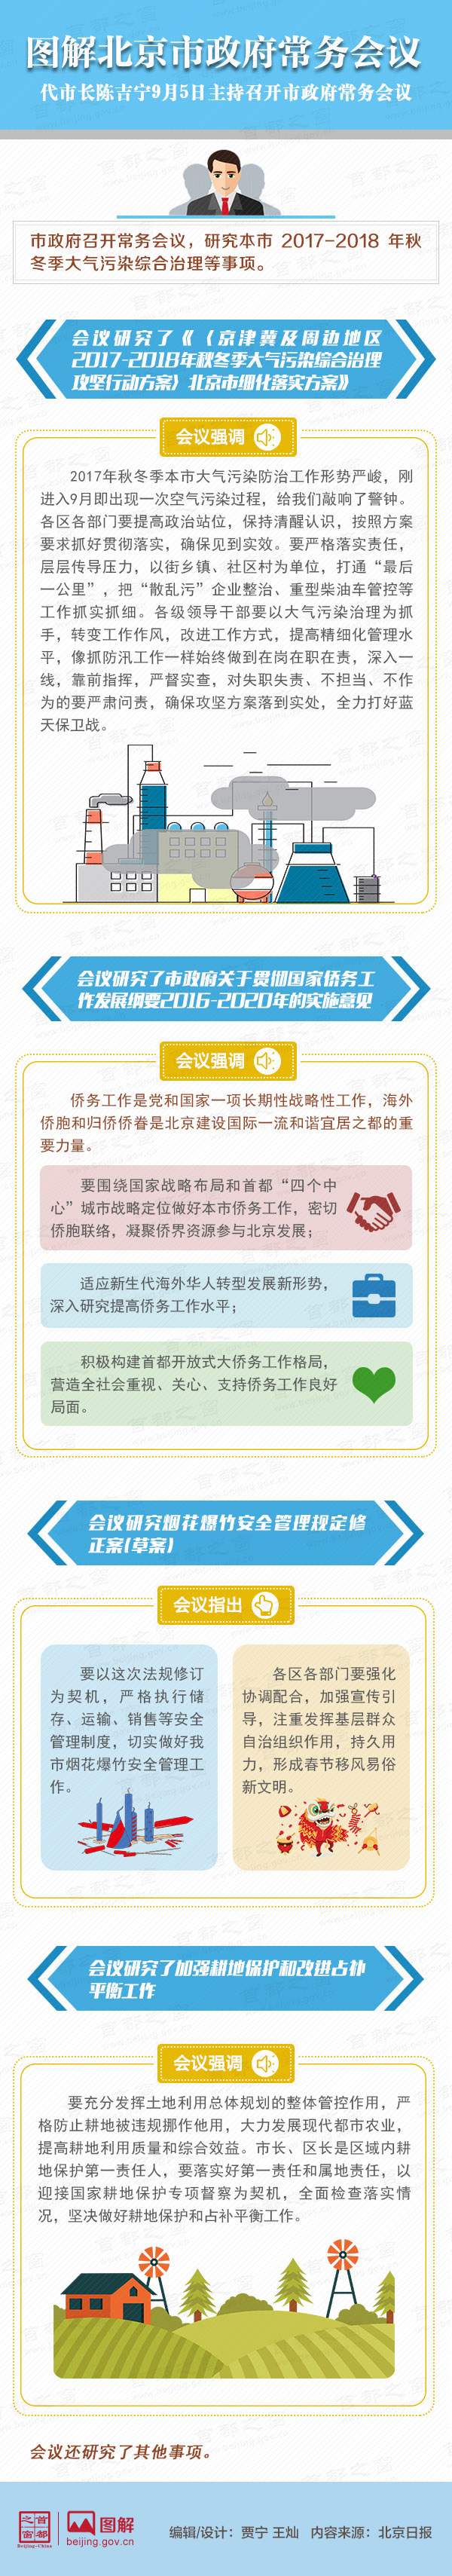 图解2017年9月5日北京市政府常务会议